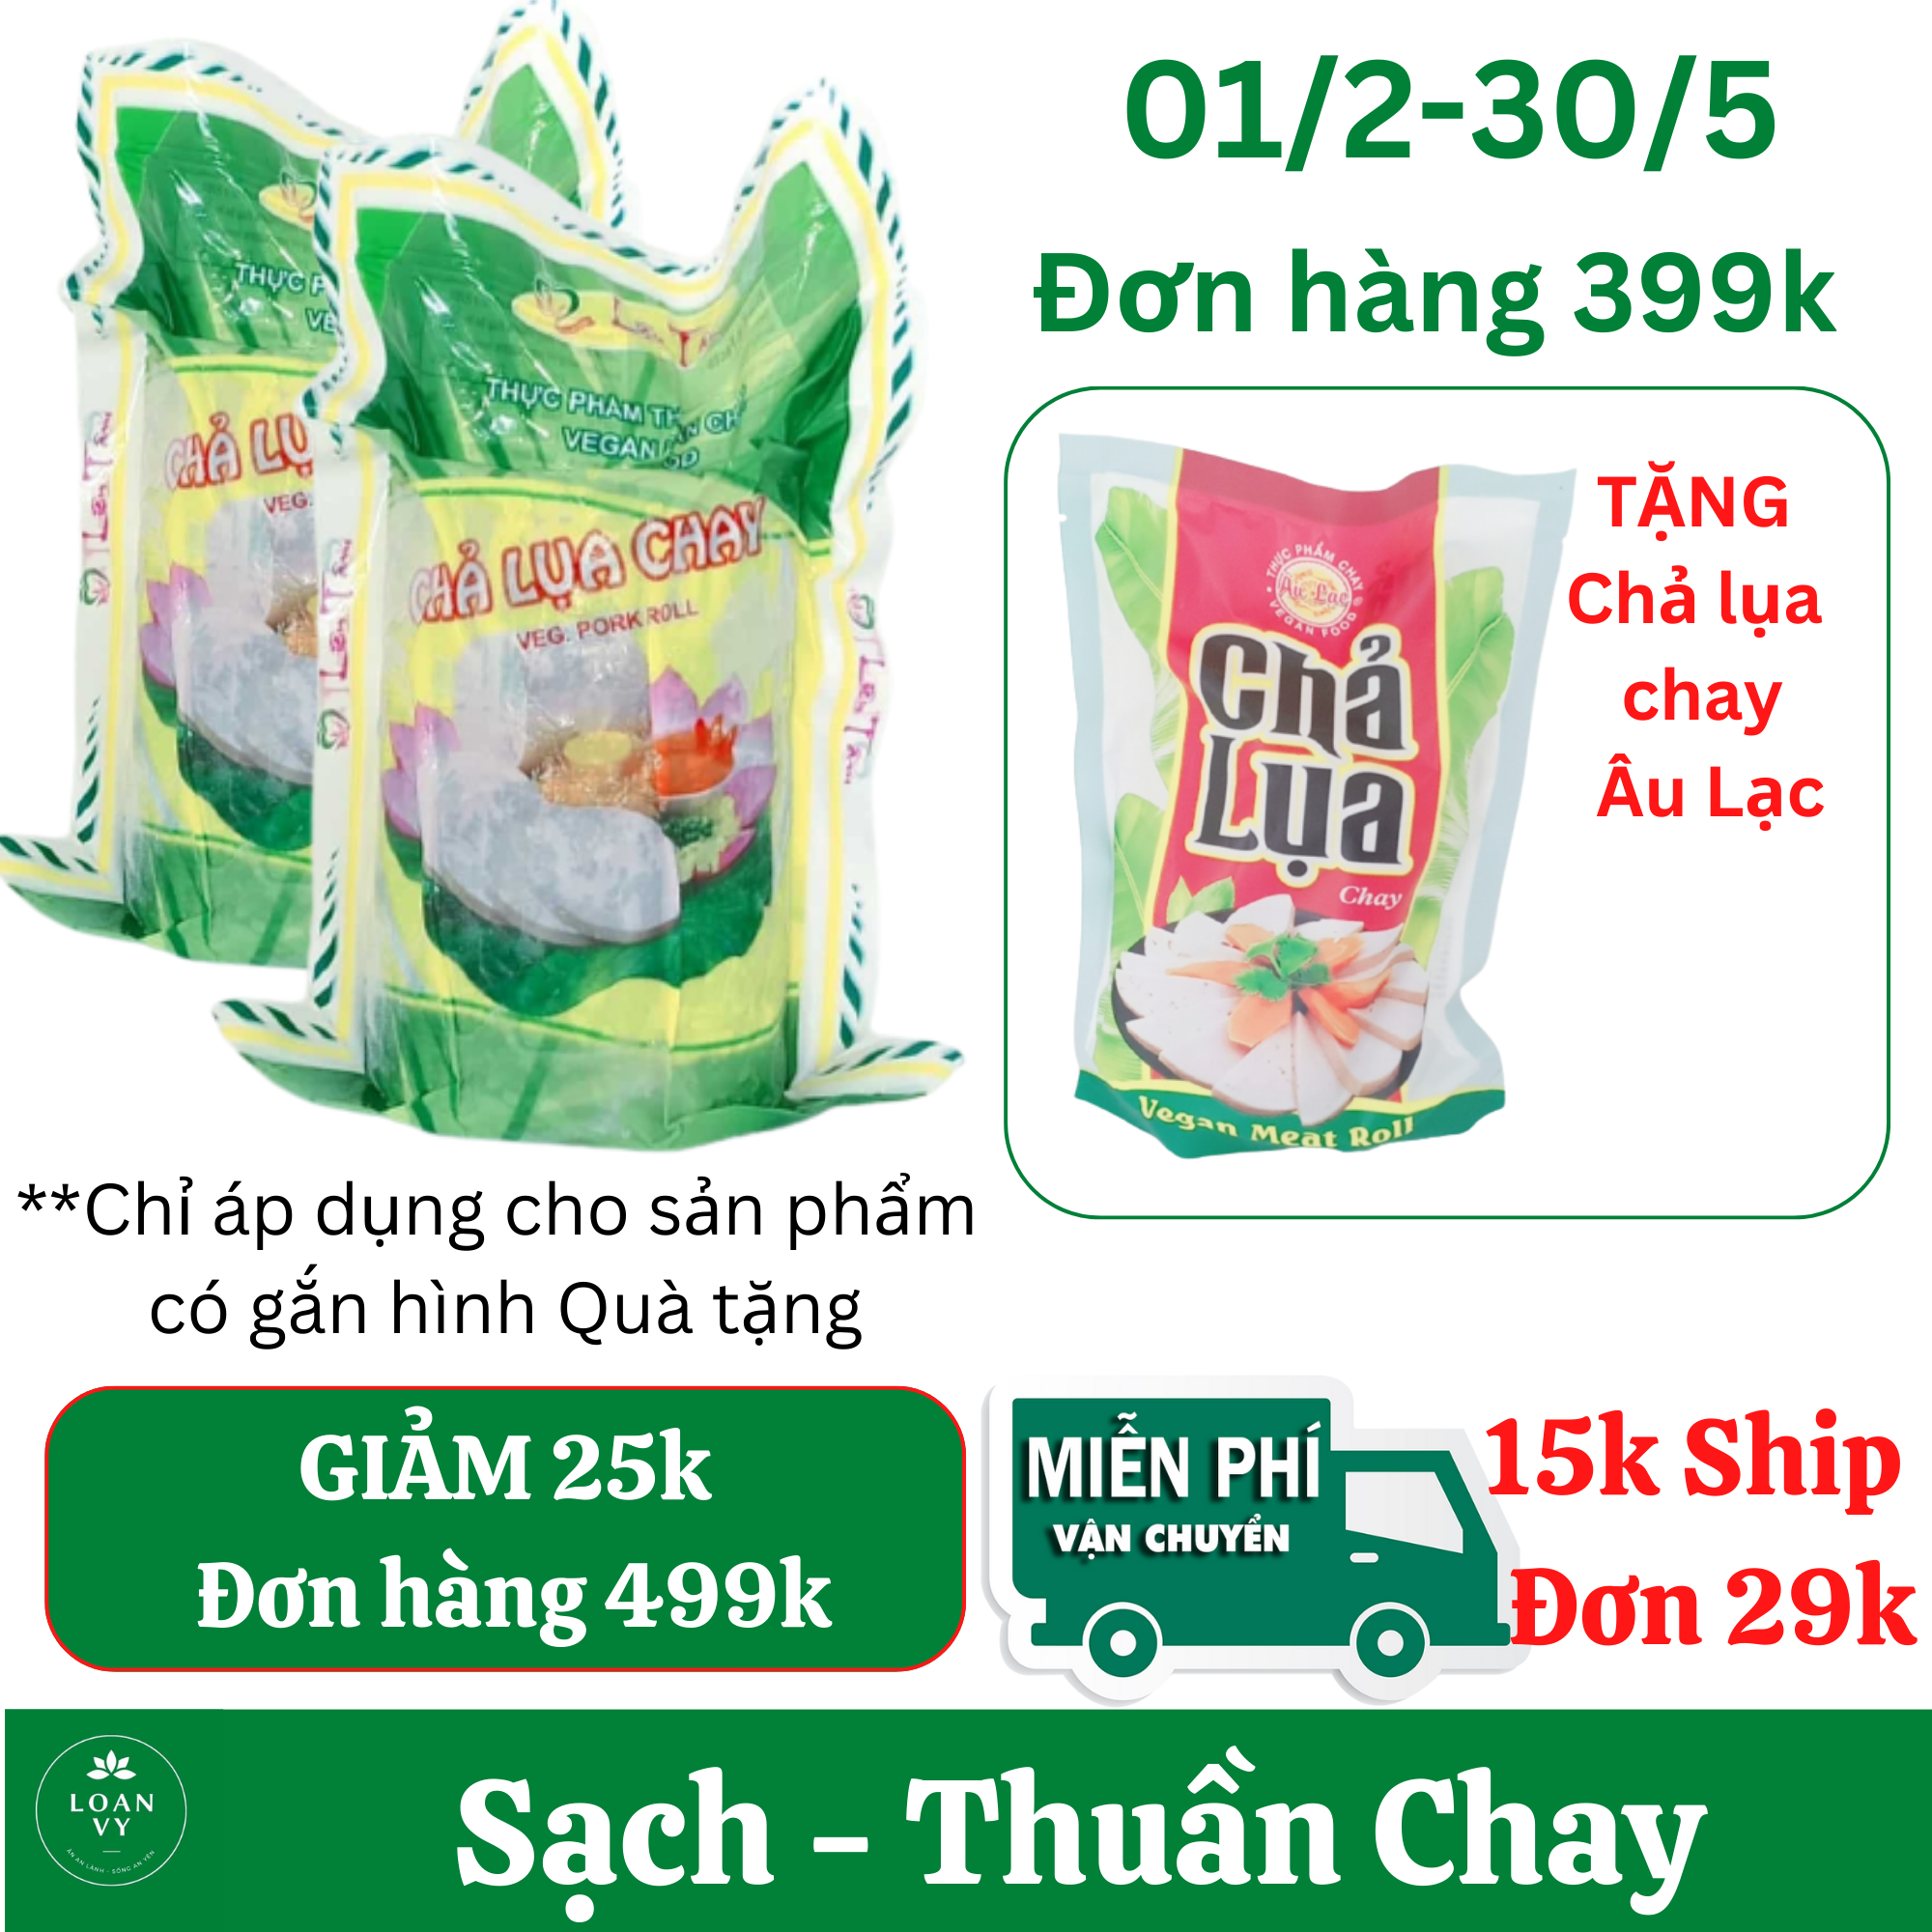 1kg Chả Lụa Chay Liên Tâm, Dai Ngon, Thuần Chay